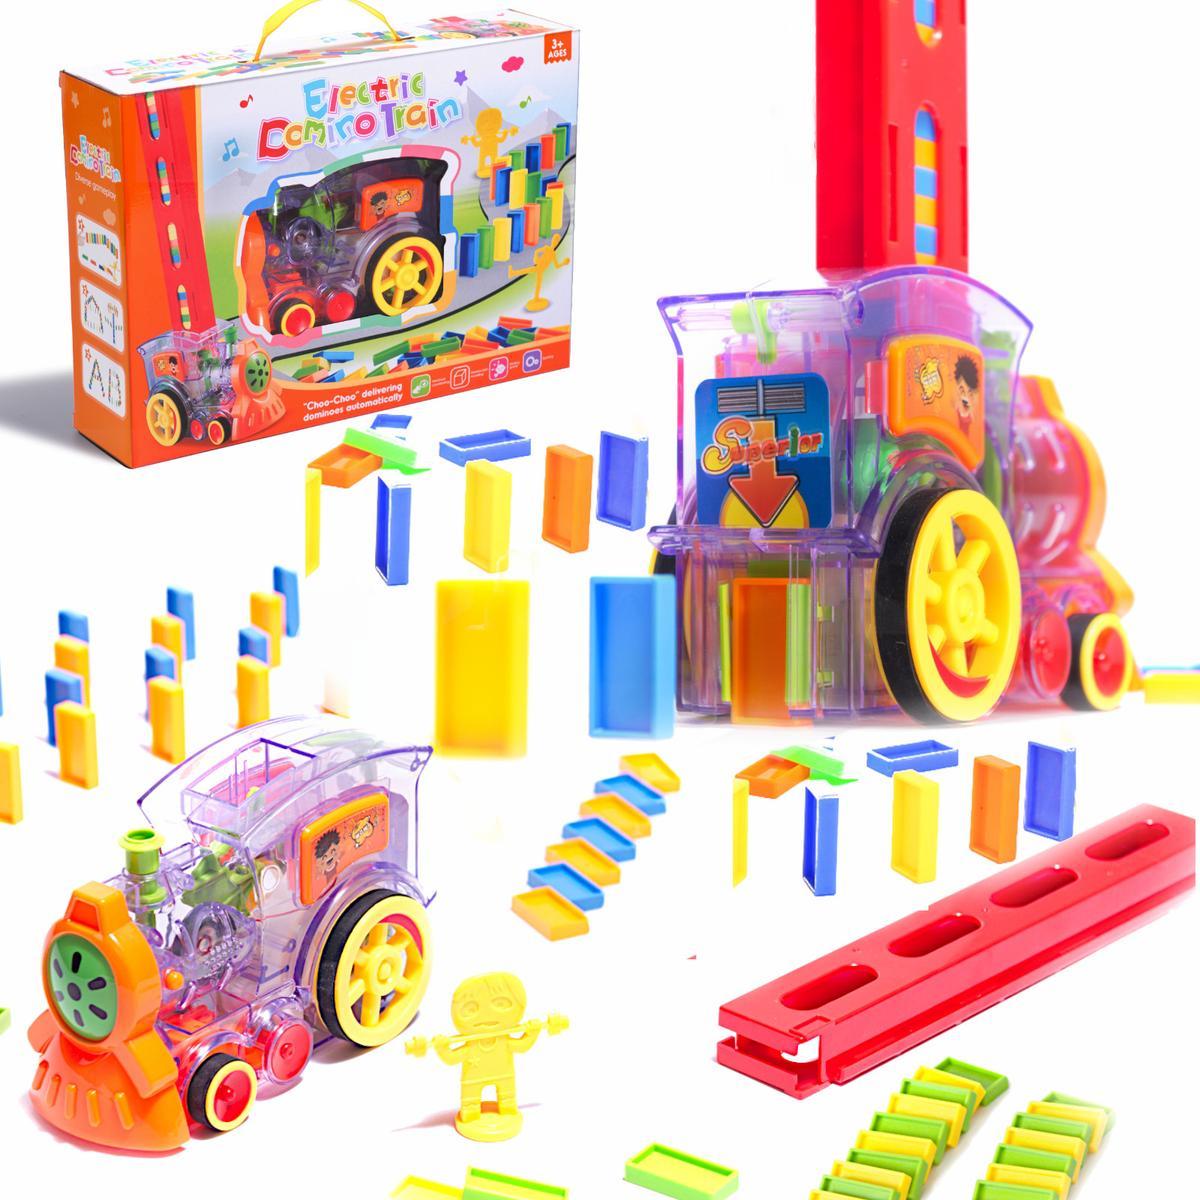 Pociąg Lokomotywa interaktywna układanka domino z kolejką zabawka dla dzieci 16x7x10 cm nr. 7